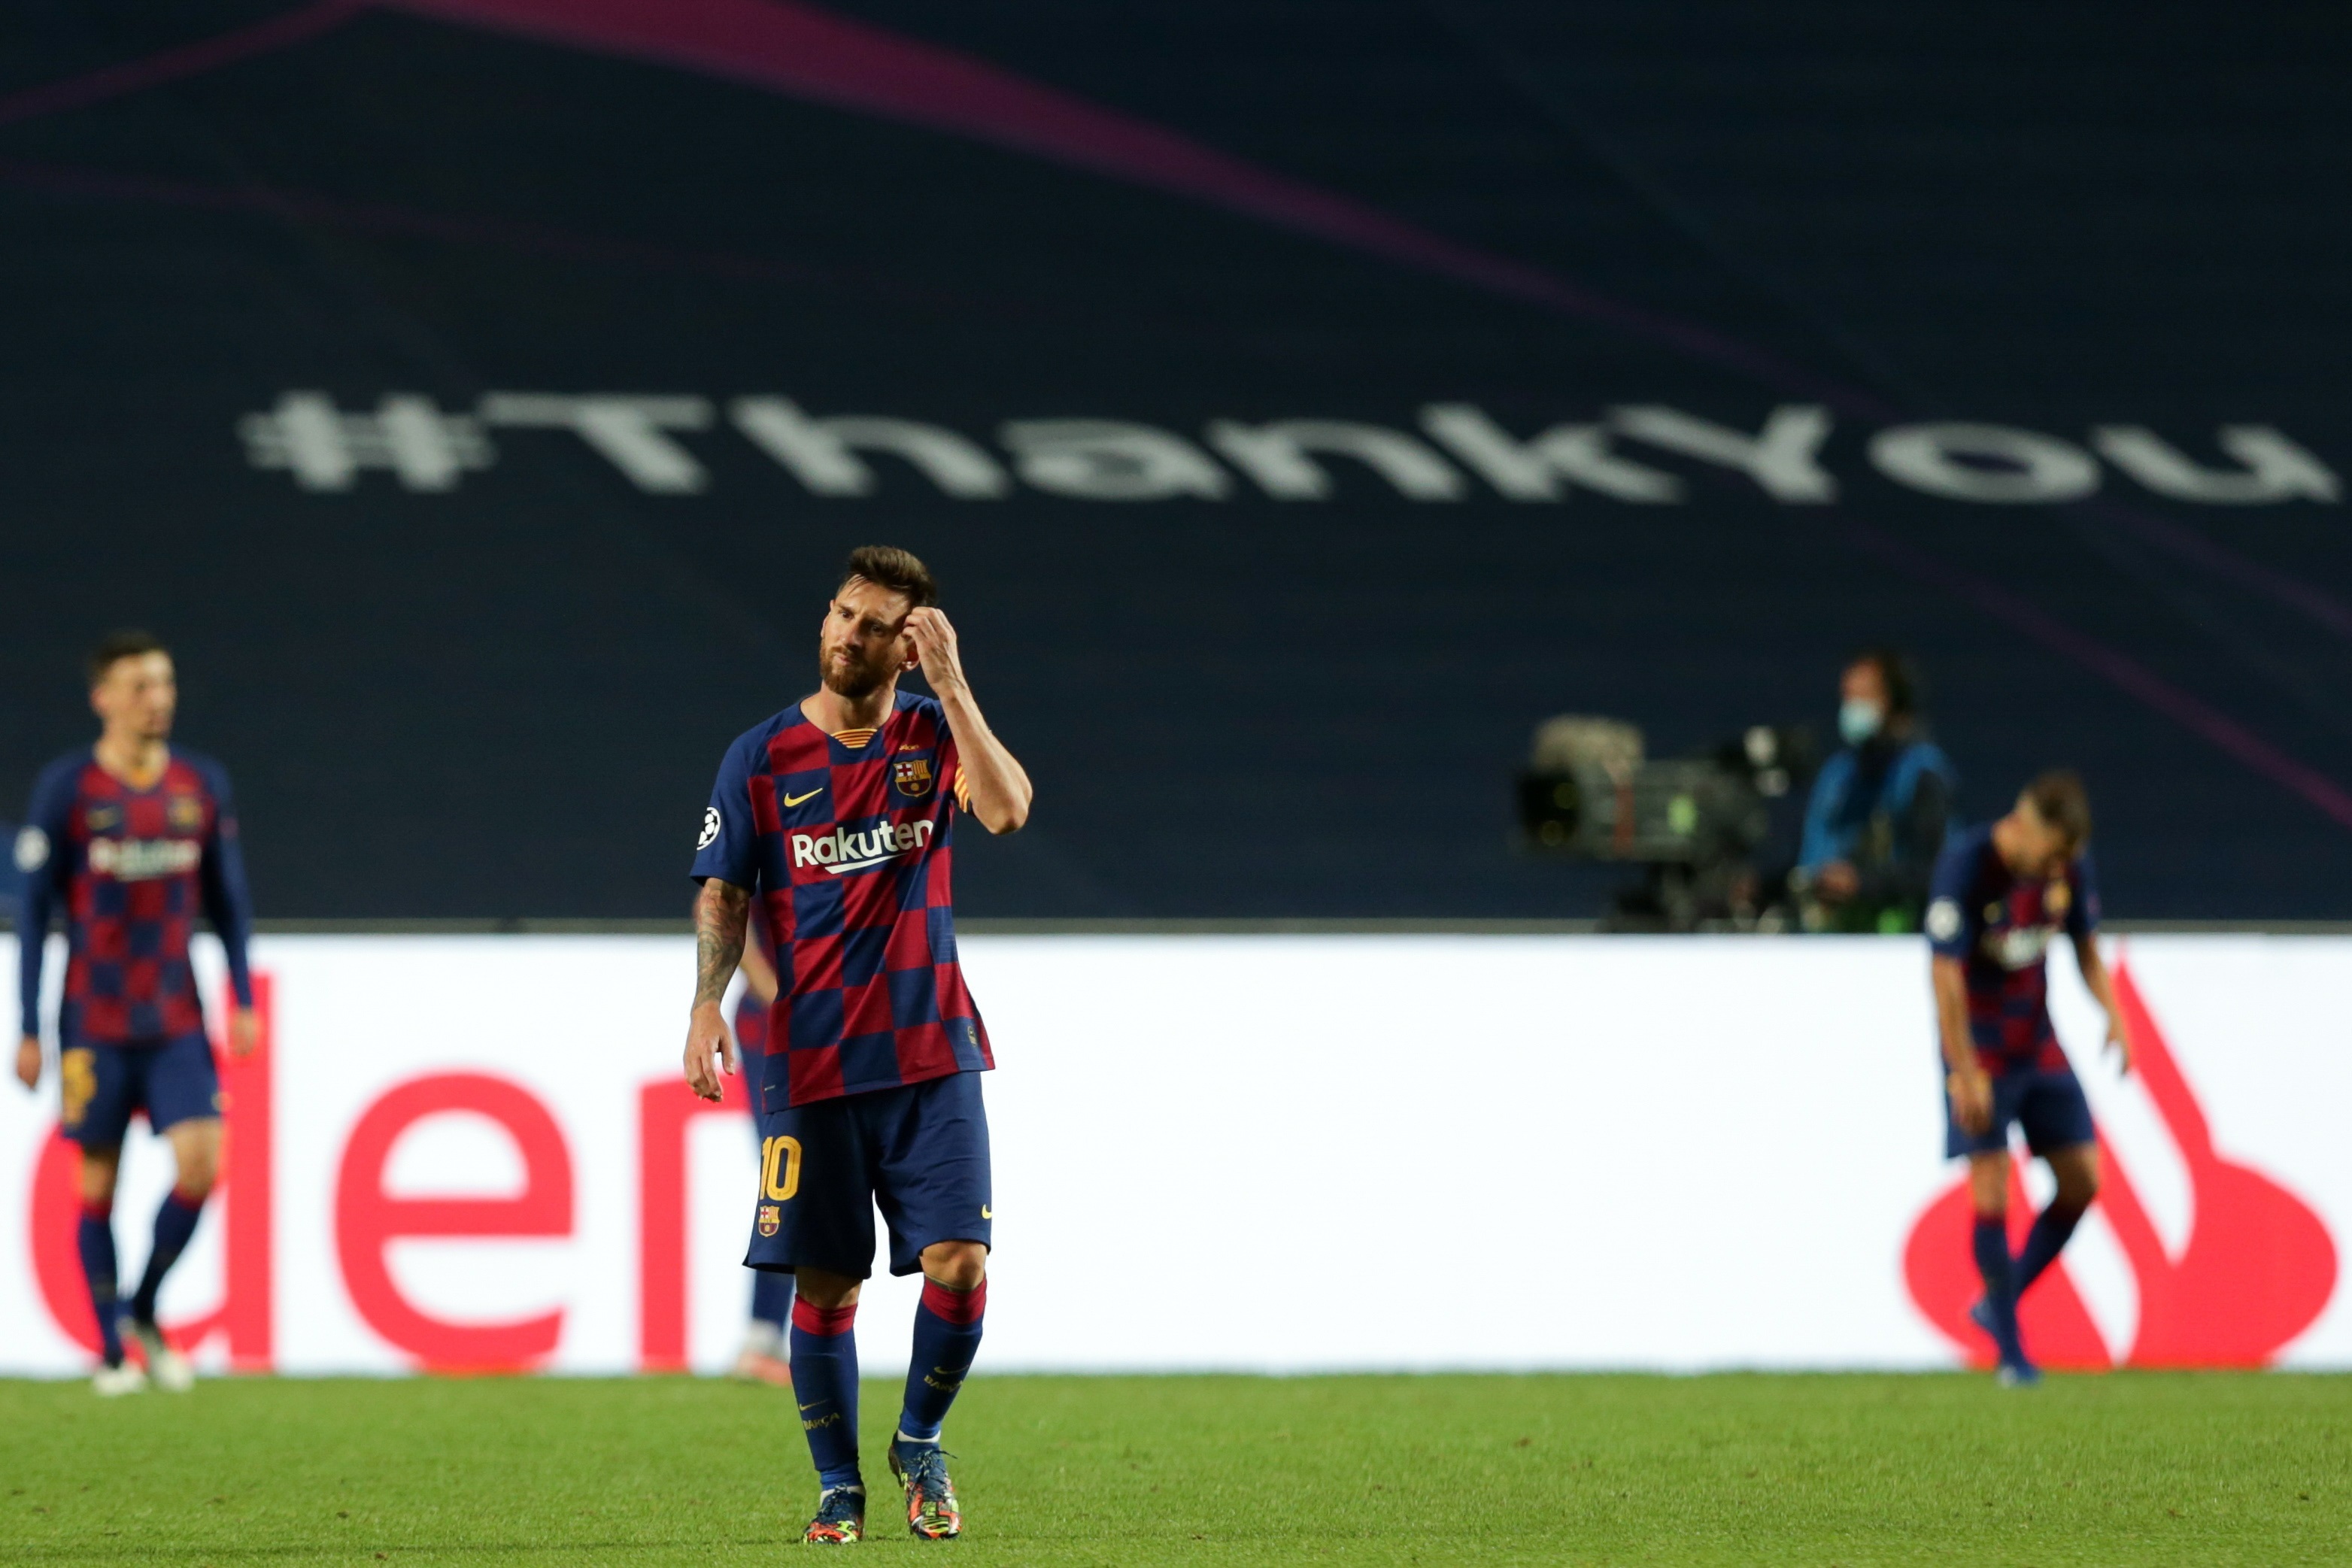 La FOTO de Messi desconsolado en el vestuario que se volvió viral tras la contundente eliminación